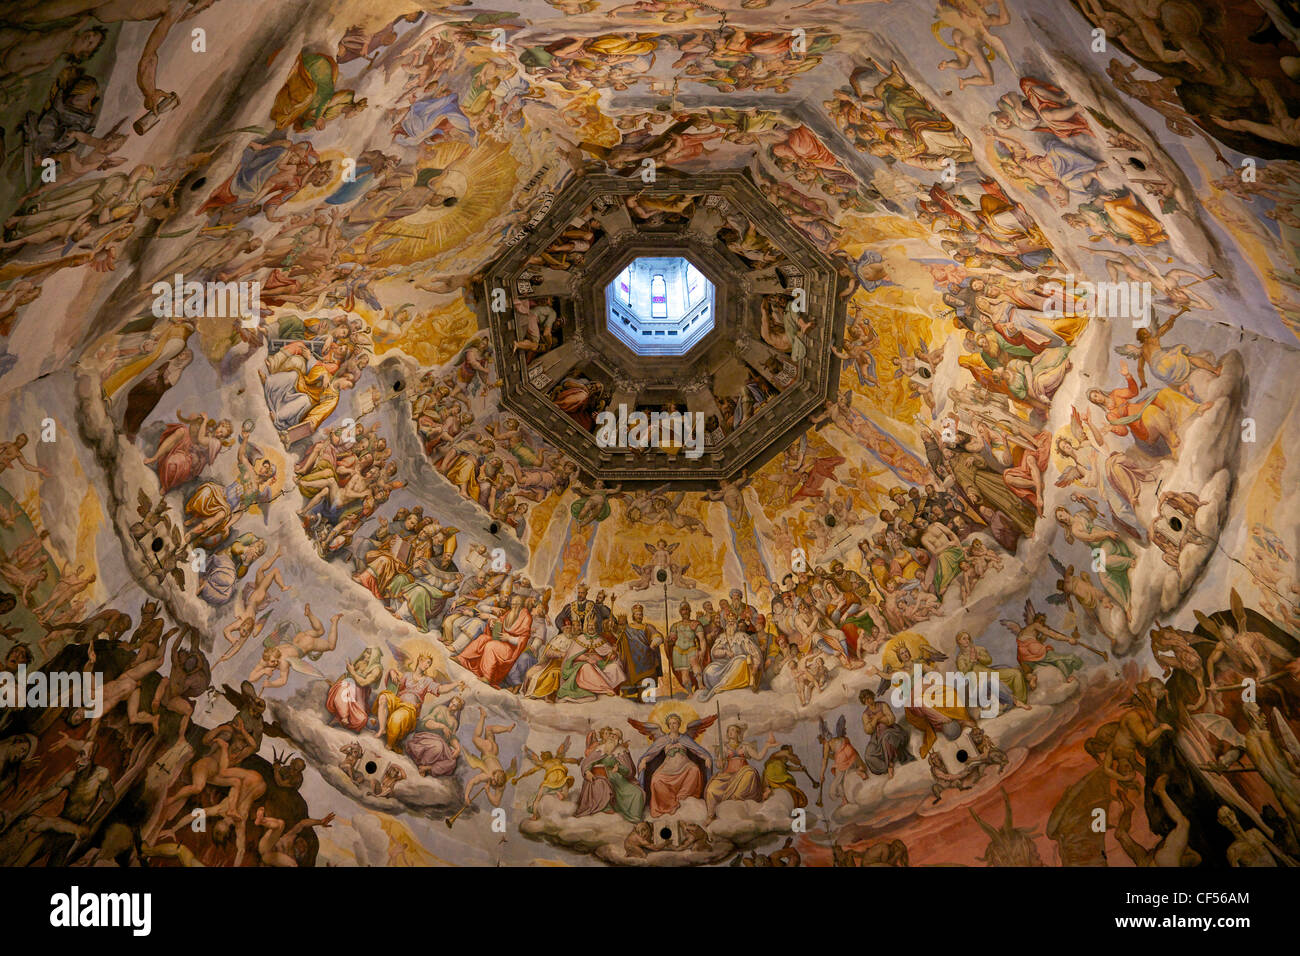 Jugement dernier fresques de la coupole de Brunelleschi, par Vasari et Zuccari, Florence, Toscane, Italie, Europe Banque D'Images